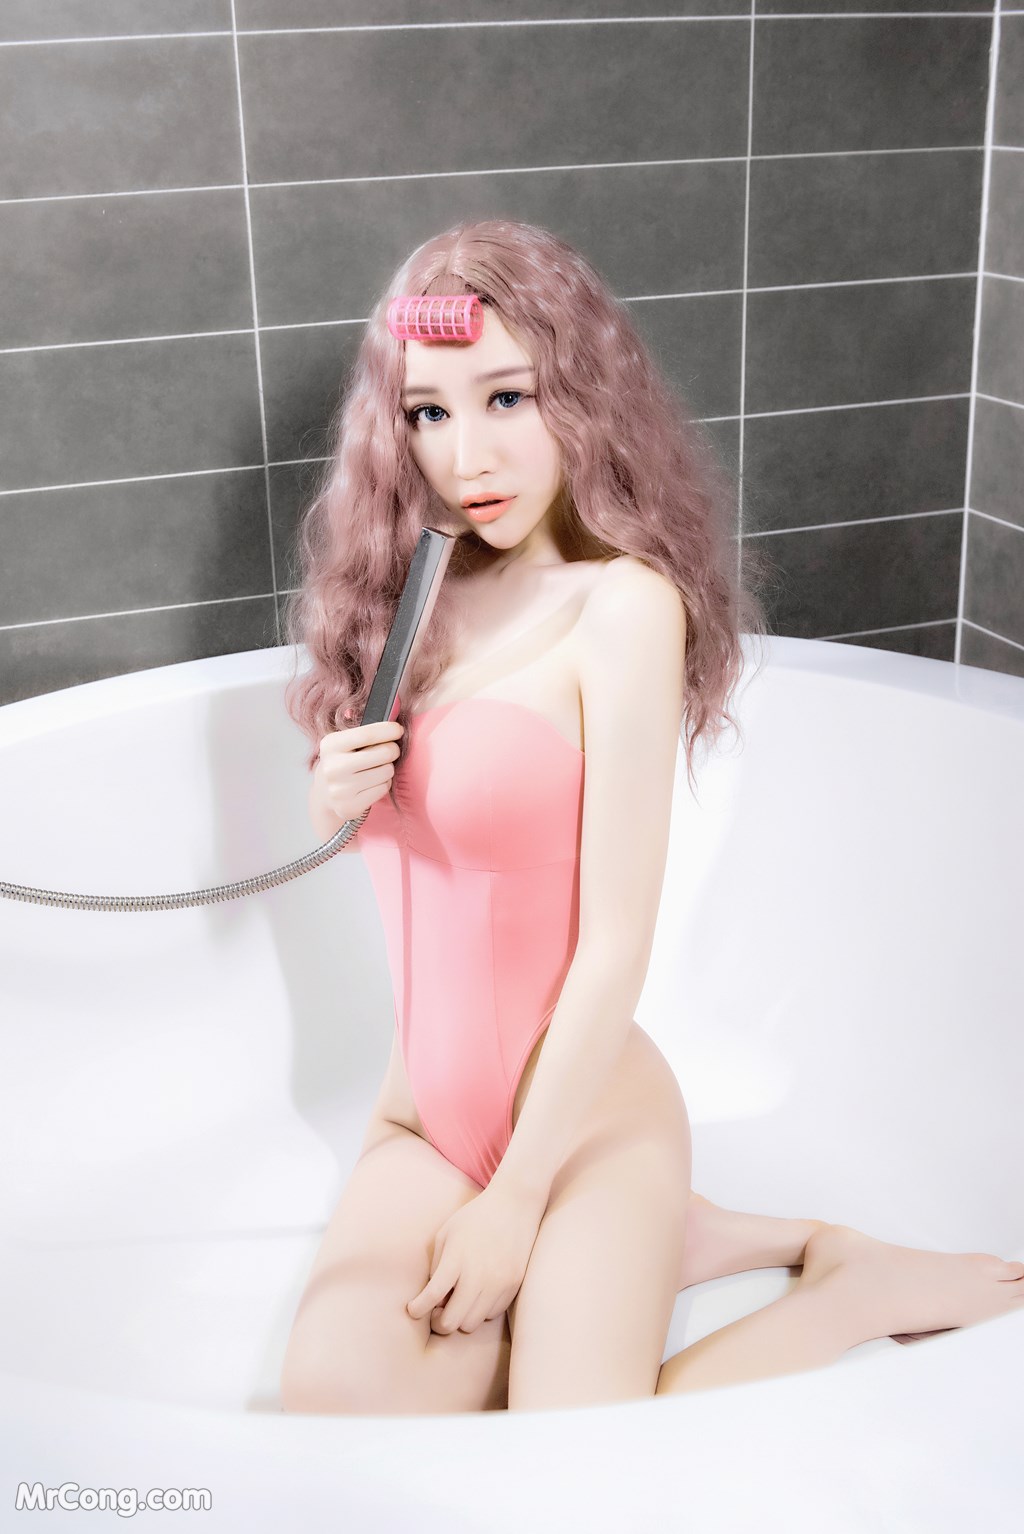 SLADY 2017-05-25 No.005: Model Mei Xin (美 昕) (51 photos) photo 2-14